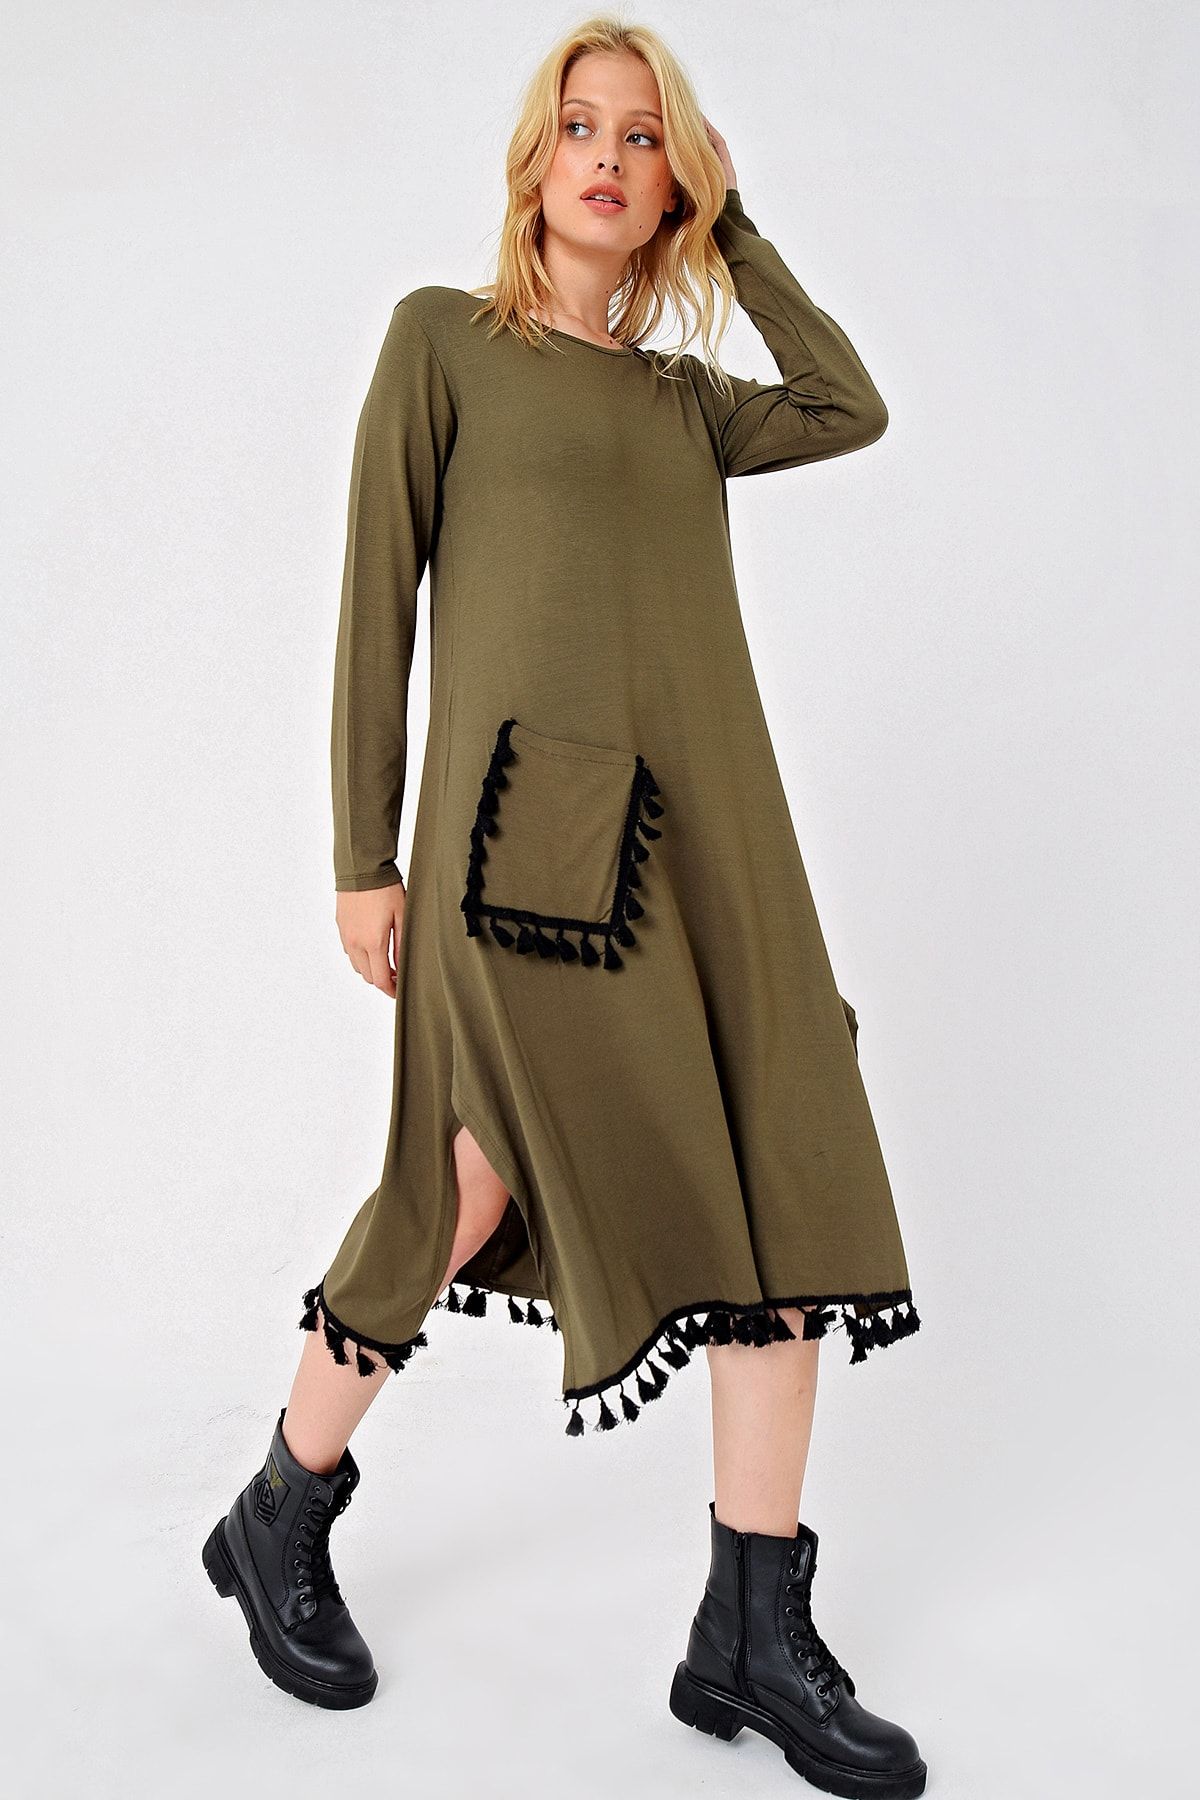 Trend Alaçatı Stili Kadın Haki Tek Cep Püskül Detaylı Viscon Elbise ALC-X4861